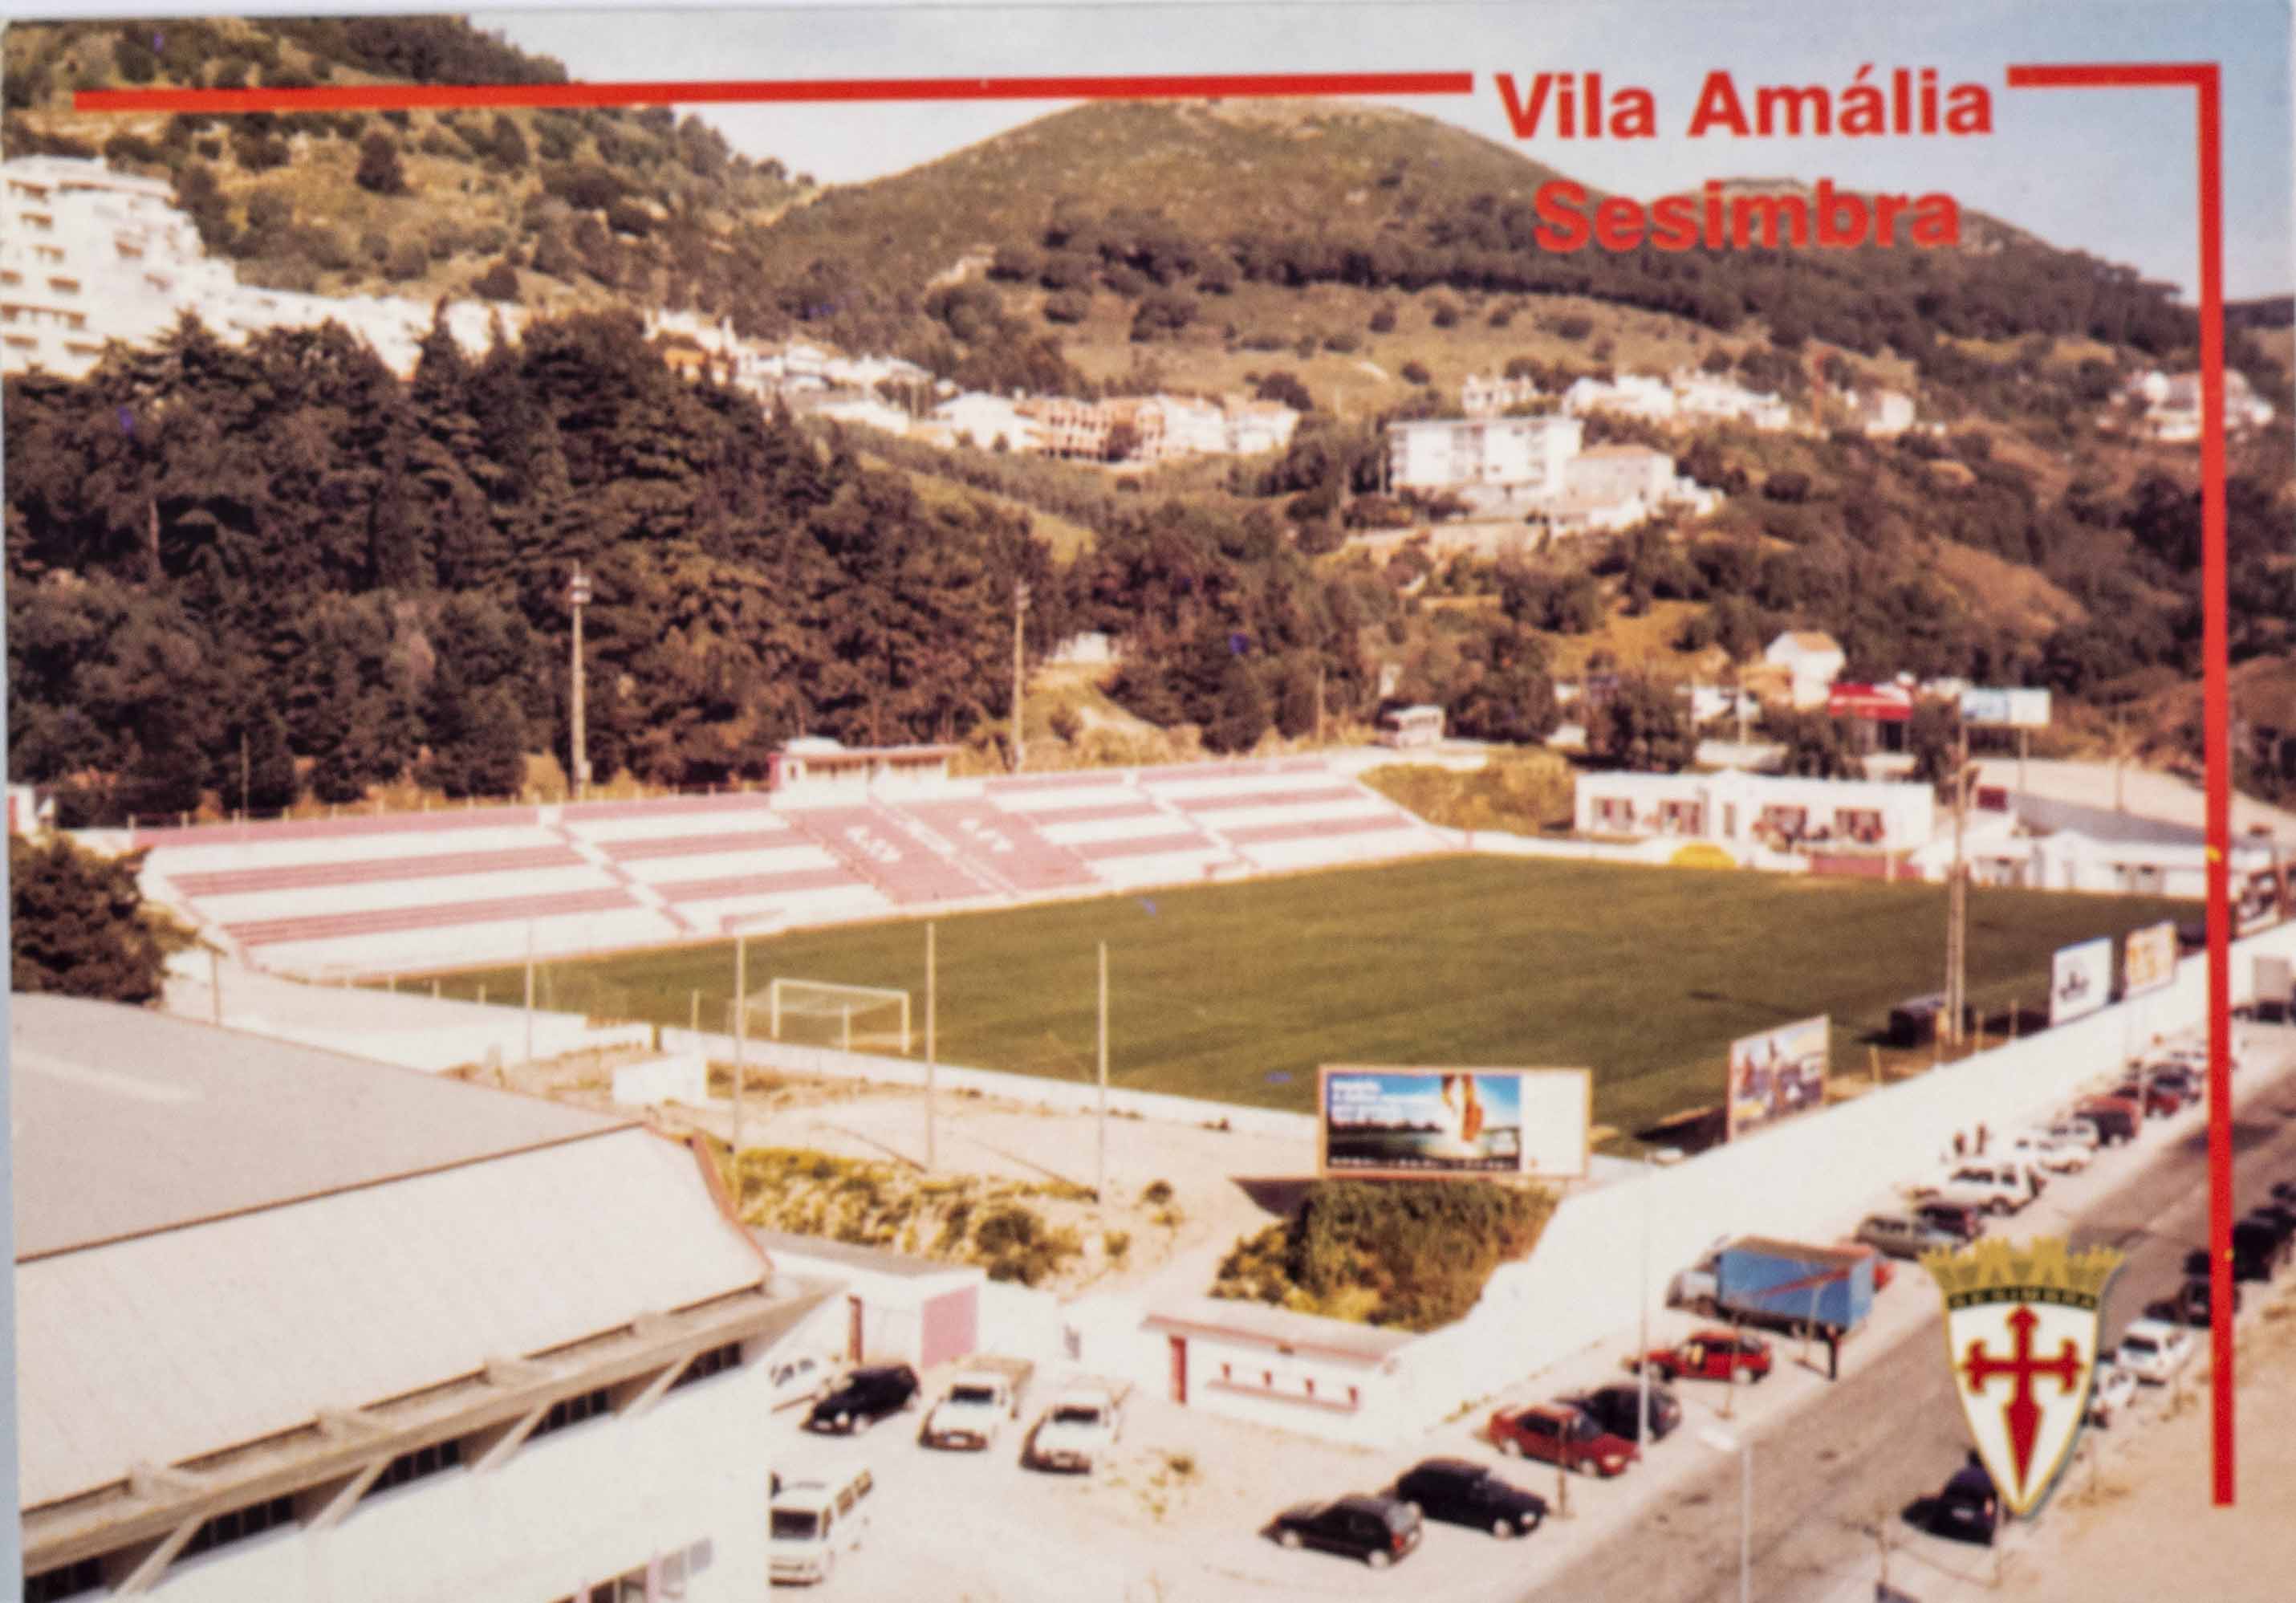 Pohlednice stadion, Estádio Vila Amália, Sesimbra